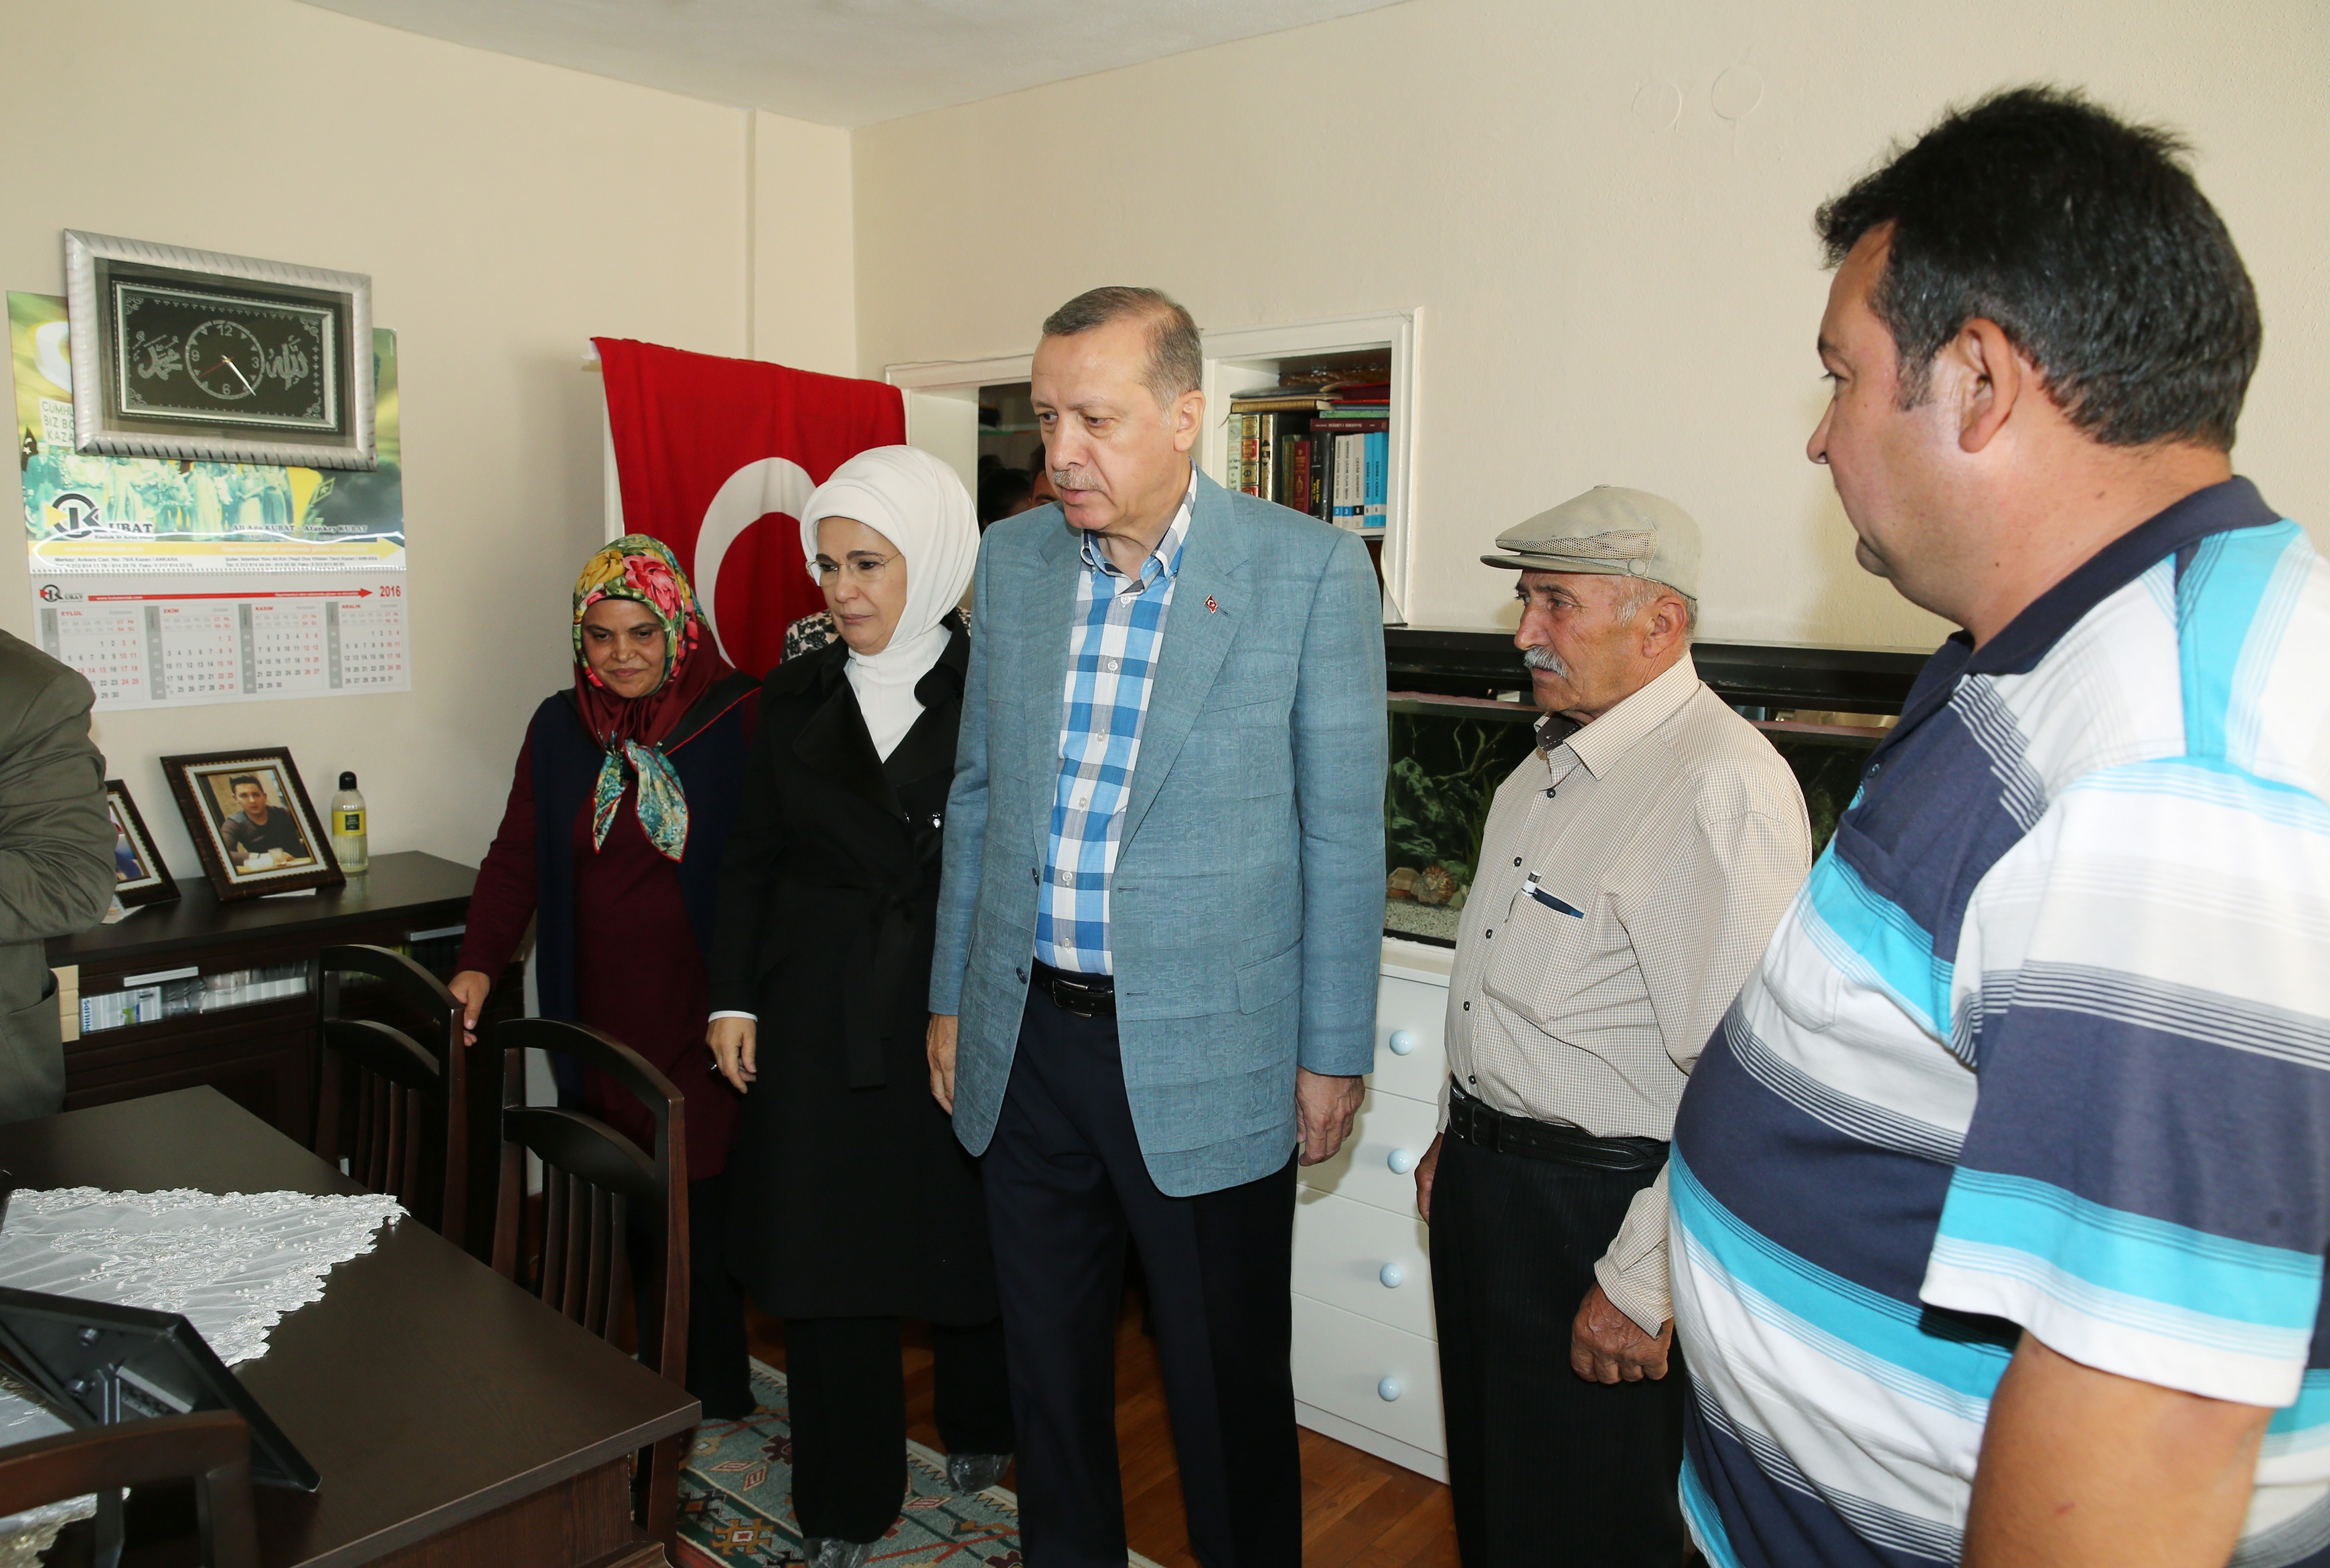 Cumhurbaşkanı Recep Tayyip Erdoğan ve eşi Emine Erdoğan, Ankara'nın Kazan İlçesi'nde darbe girişiminin yaşandığı 15 Temmuz günü şehit olan Ömer Takdemir'in ailesine taziye ziyaretinde bulundu.